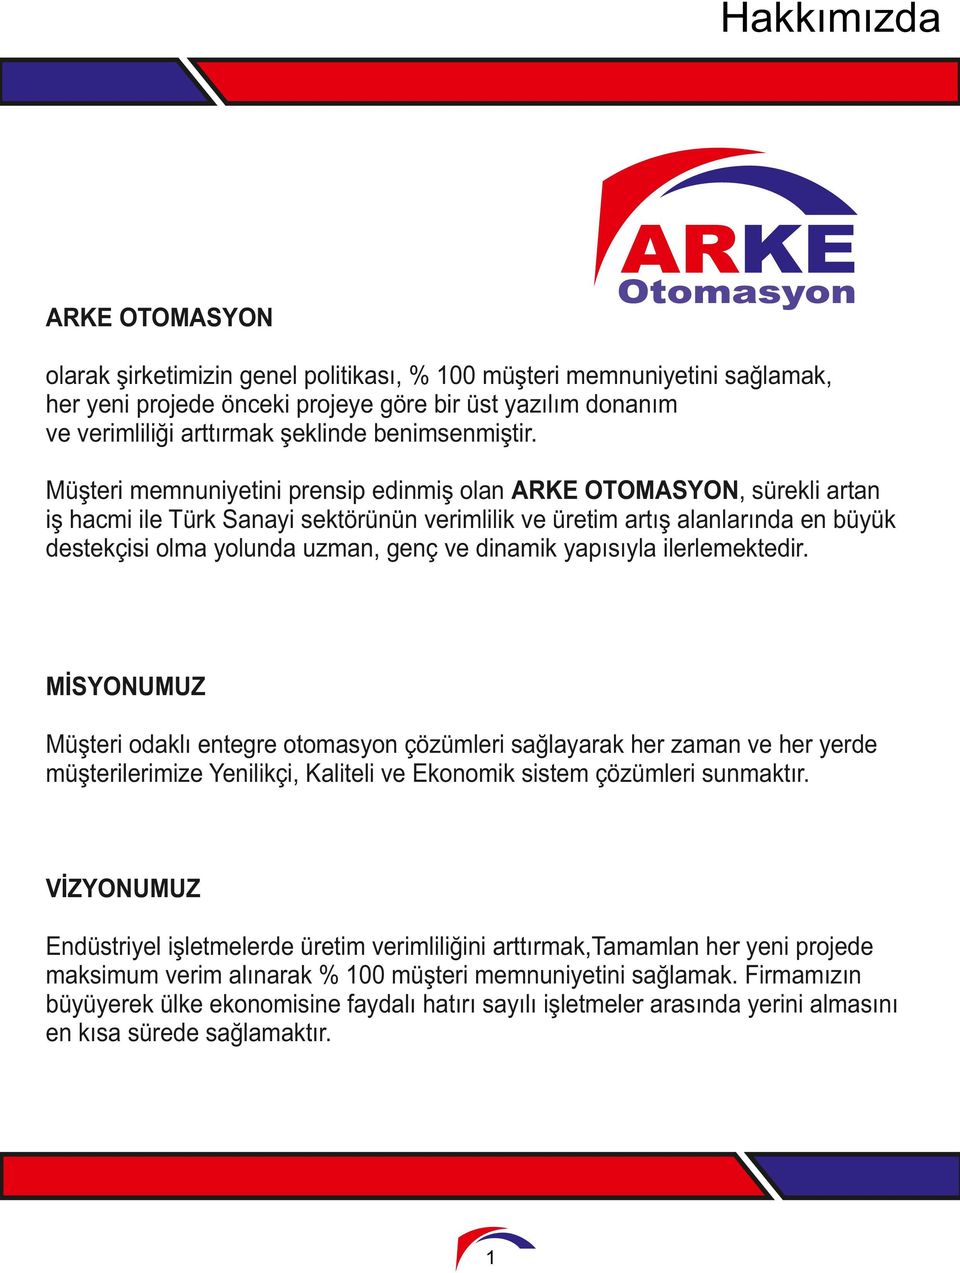 Müşteri memnuniyetini prensip edinmiş olan ARKE OTOMASYON, sürekli artan iş hacmi ile Türk Sanayi sektörünün verimlilik ve üretim artış alanlarında en büyük destekçisi olma yolunda uzman, genç ve